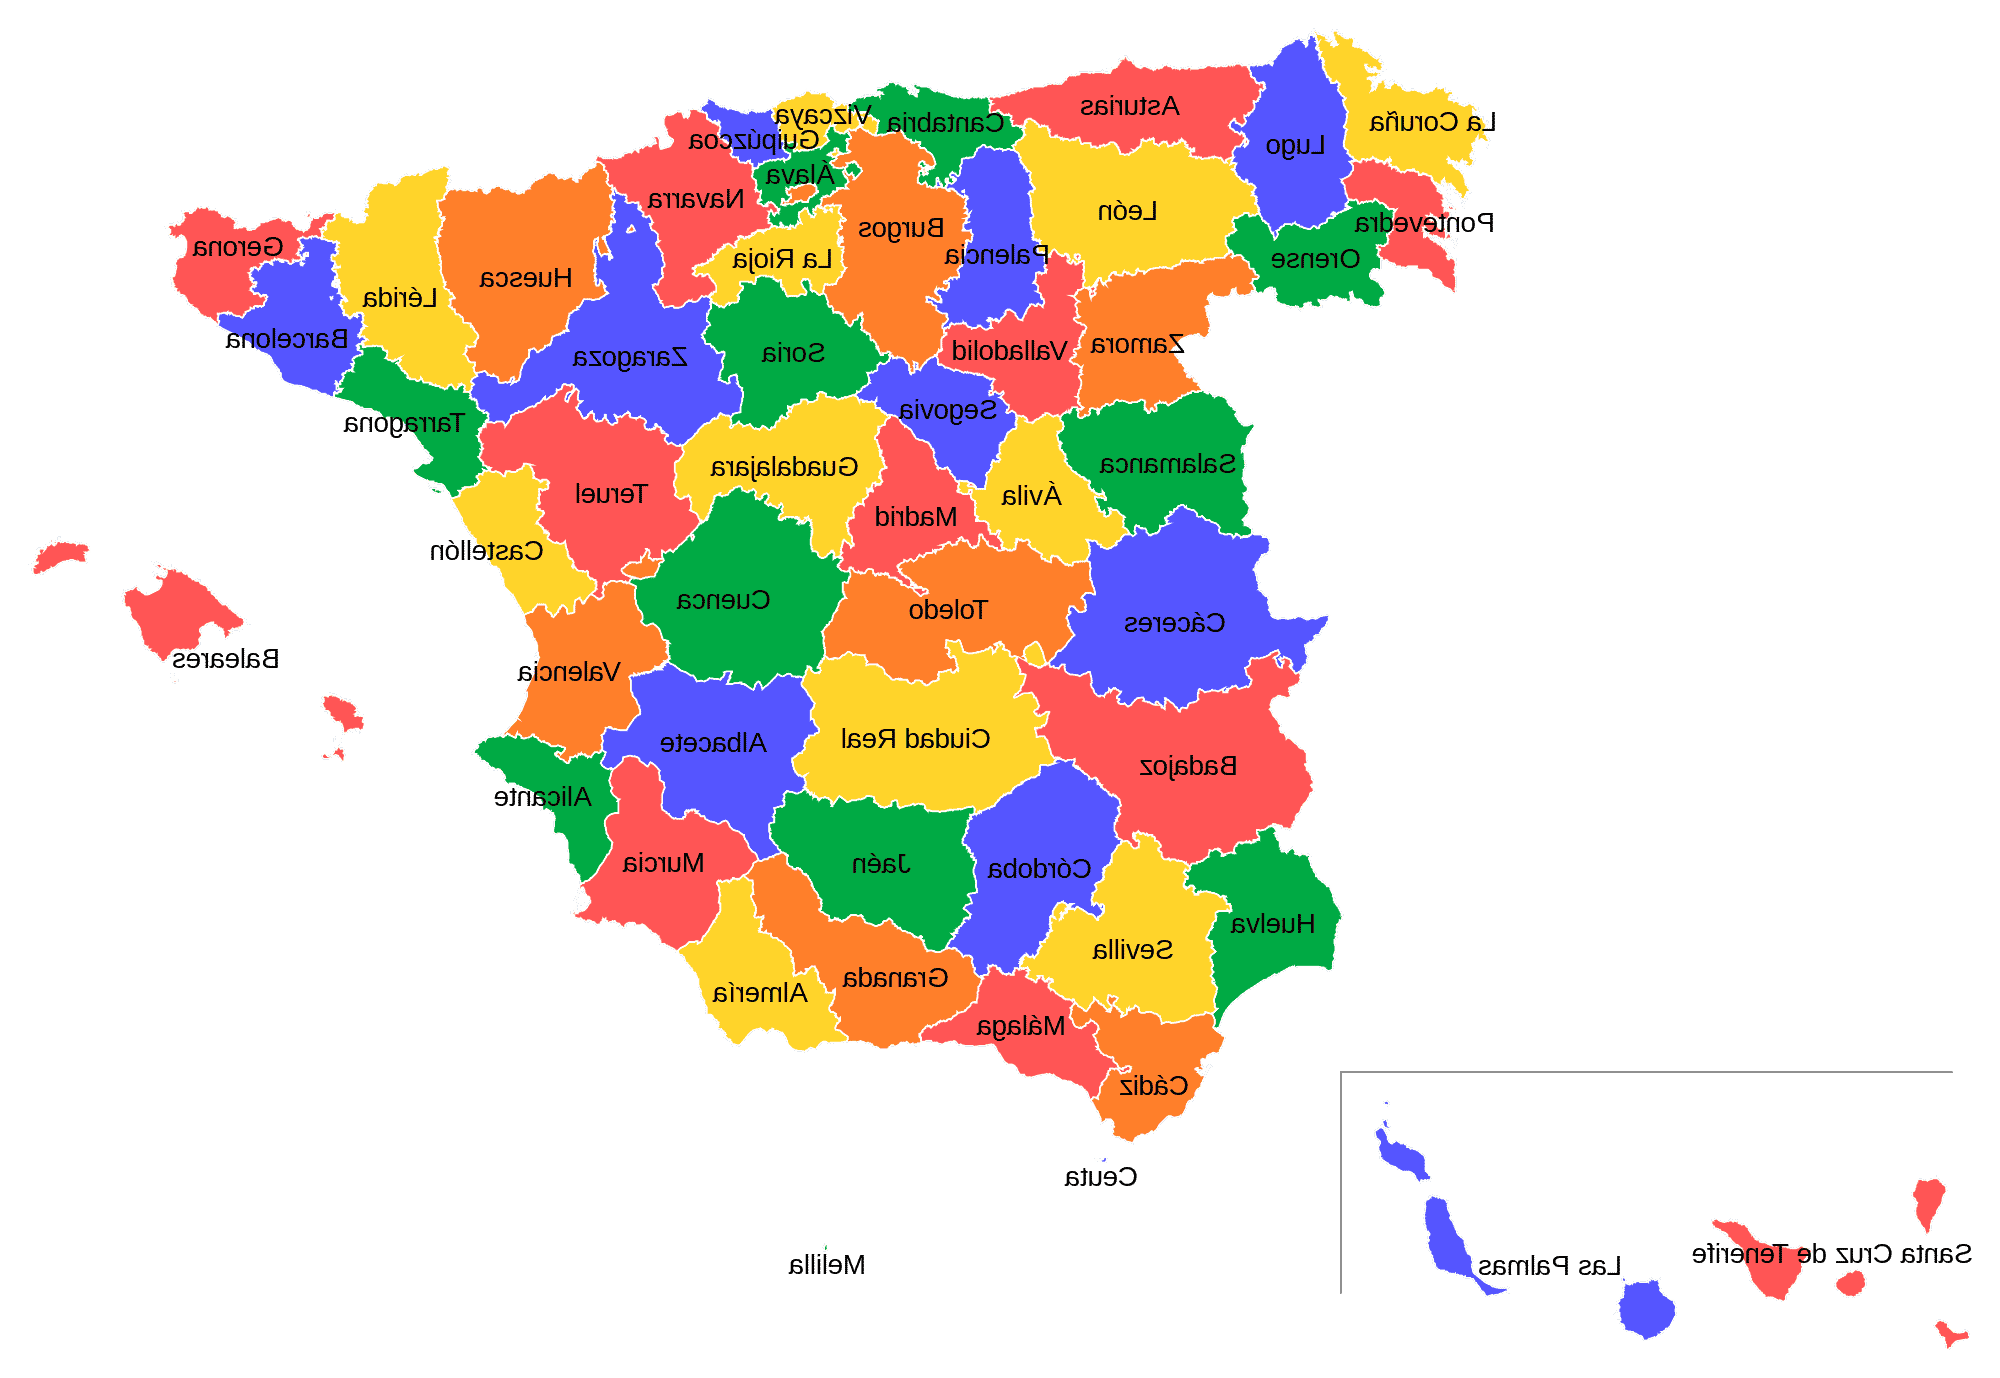 ¿Cuáles son las dos ciudades autonomas de España?